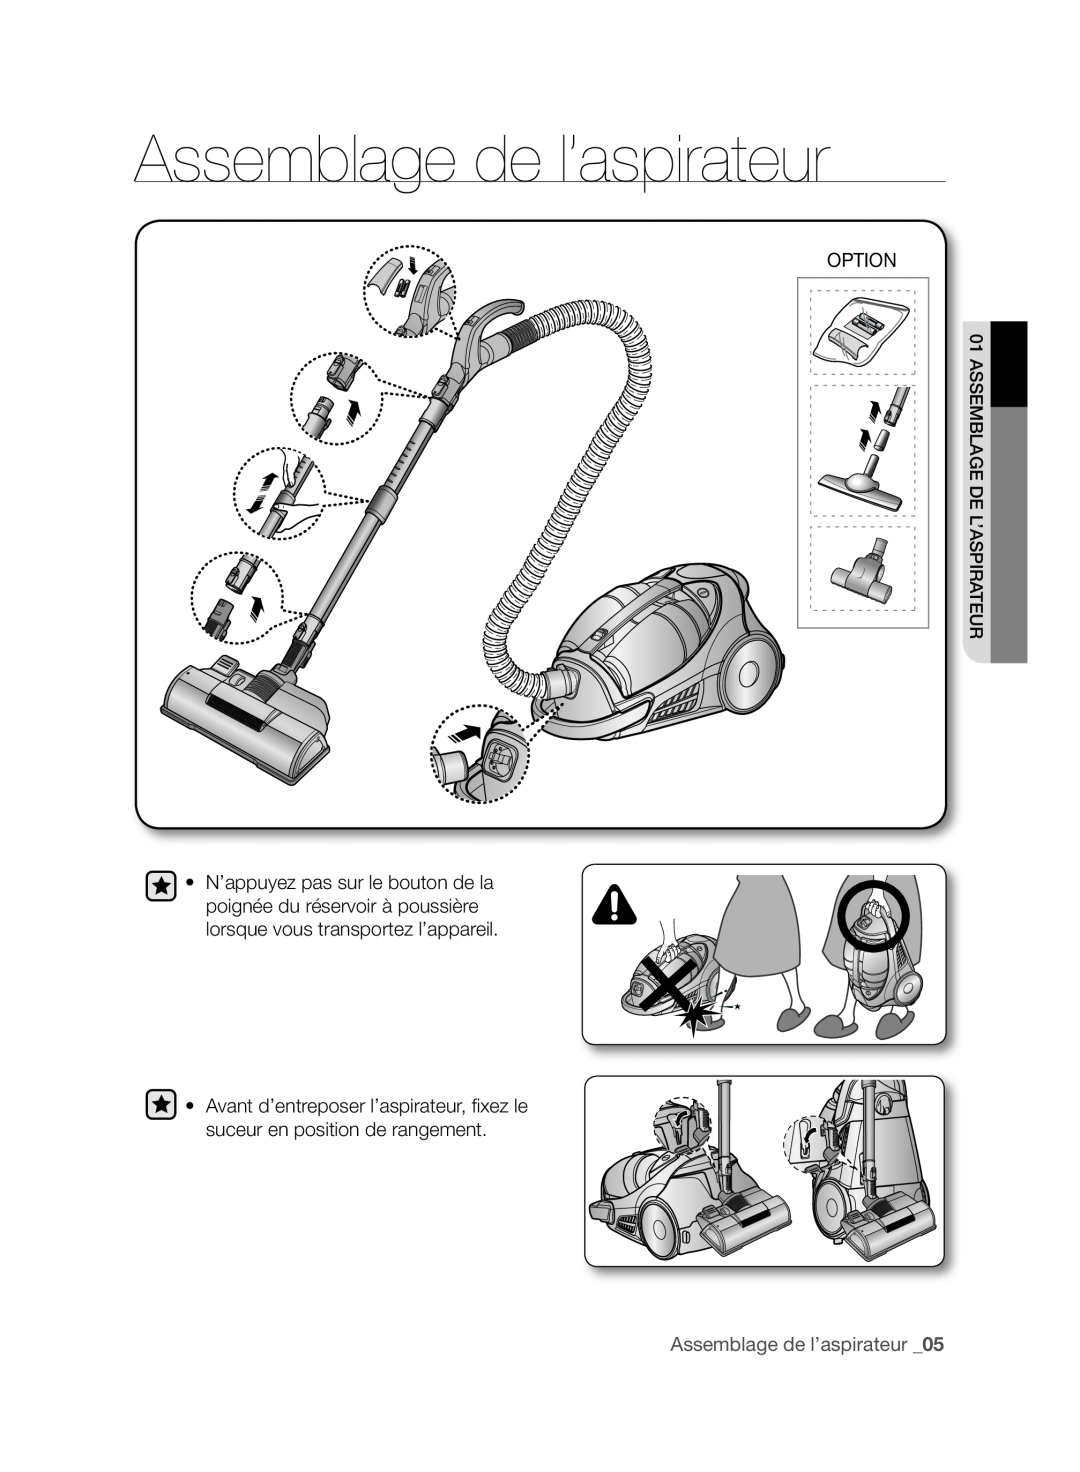 Samsung VCC96P0H1G user manual Assemblage de l’aspirateur _05, Option 